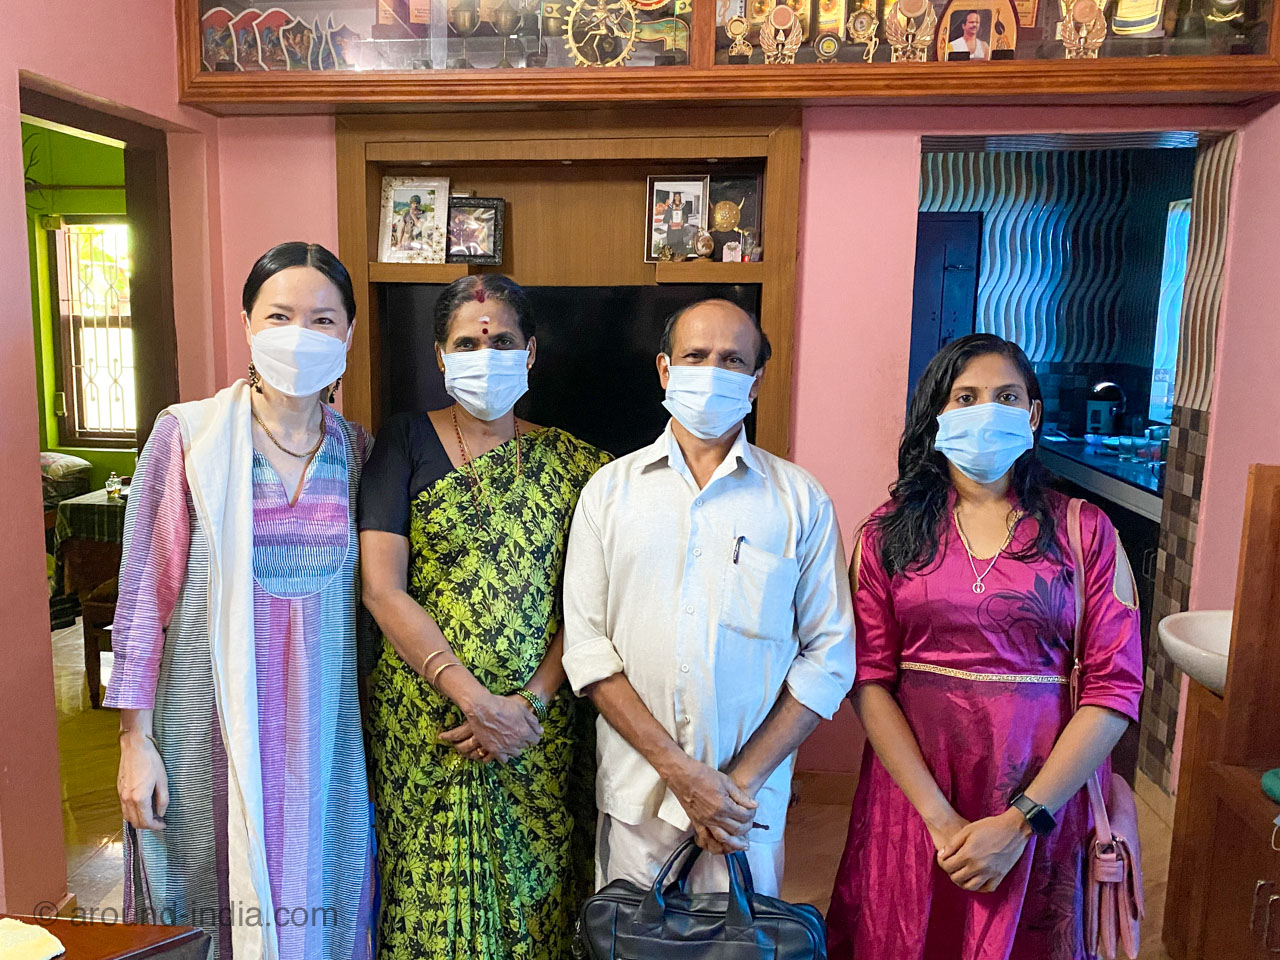 マスクで記念撮影 カラリパヤットゥ師匠とご家族とAROUND INDIA田村